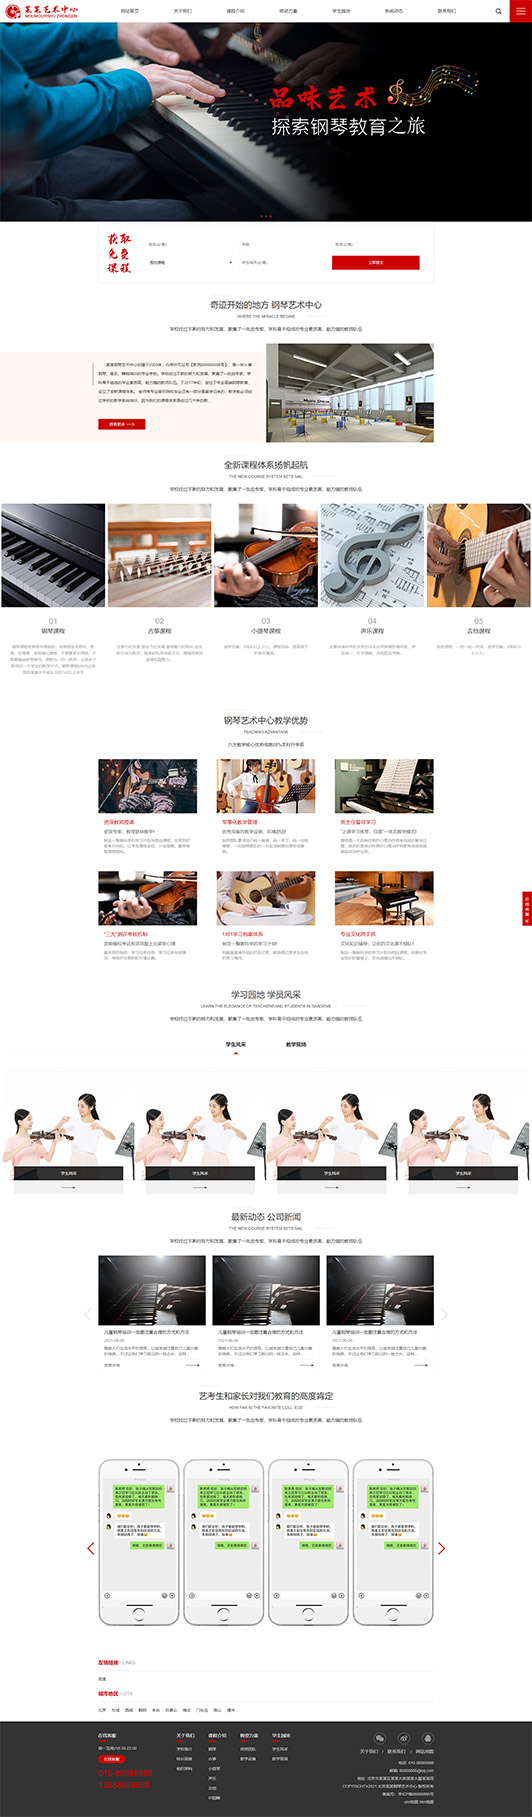 怀化钢琴艺术培训公司响应式企业网站